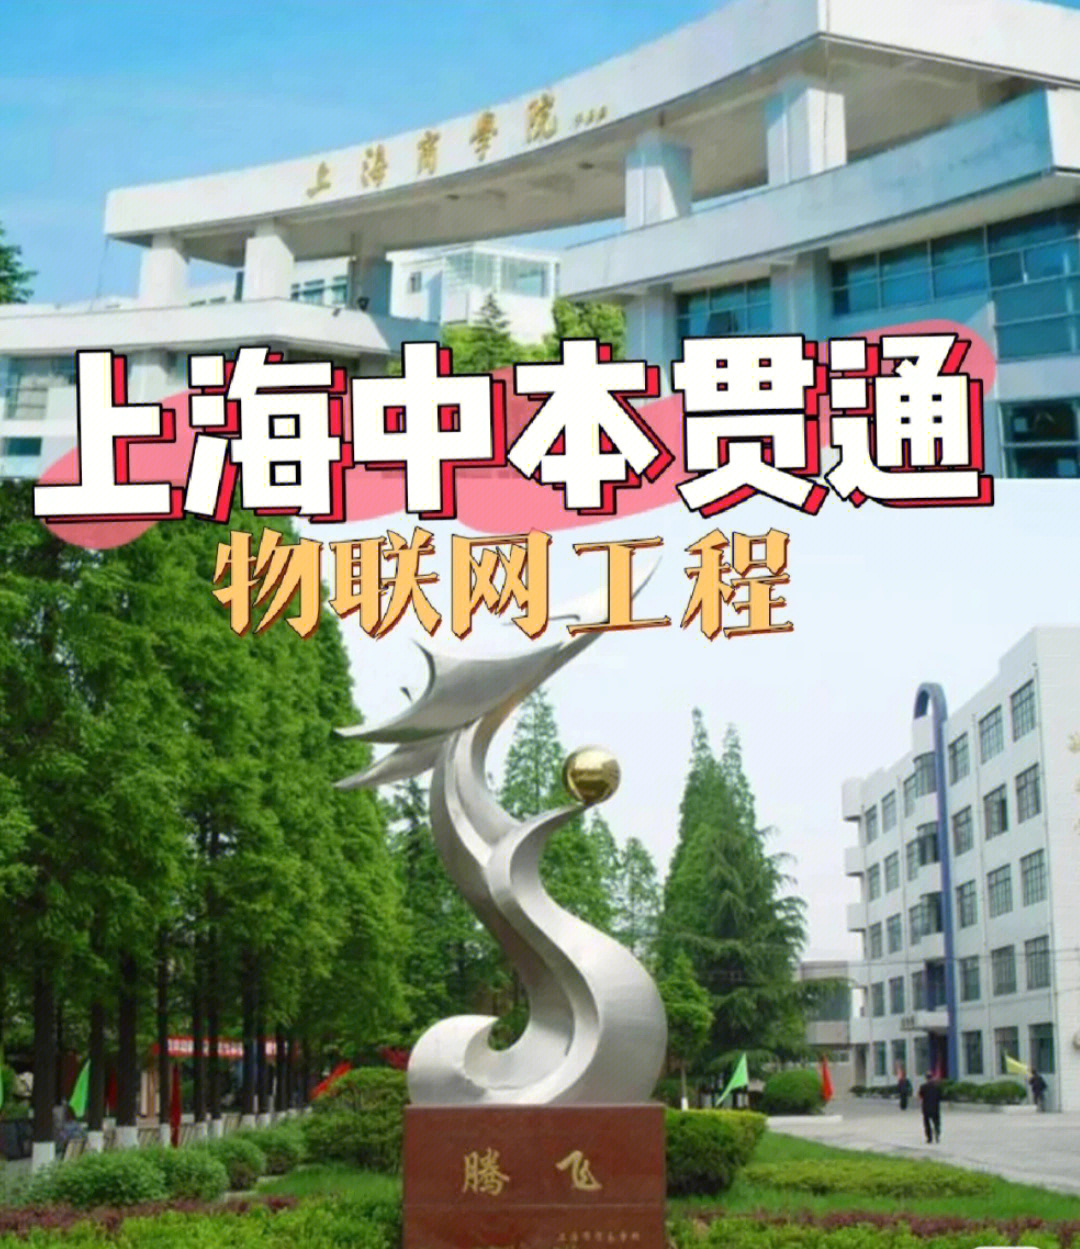 本期介绍上海市贸易学校